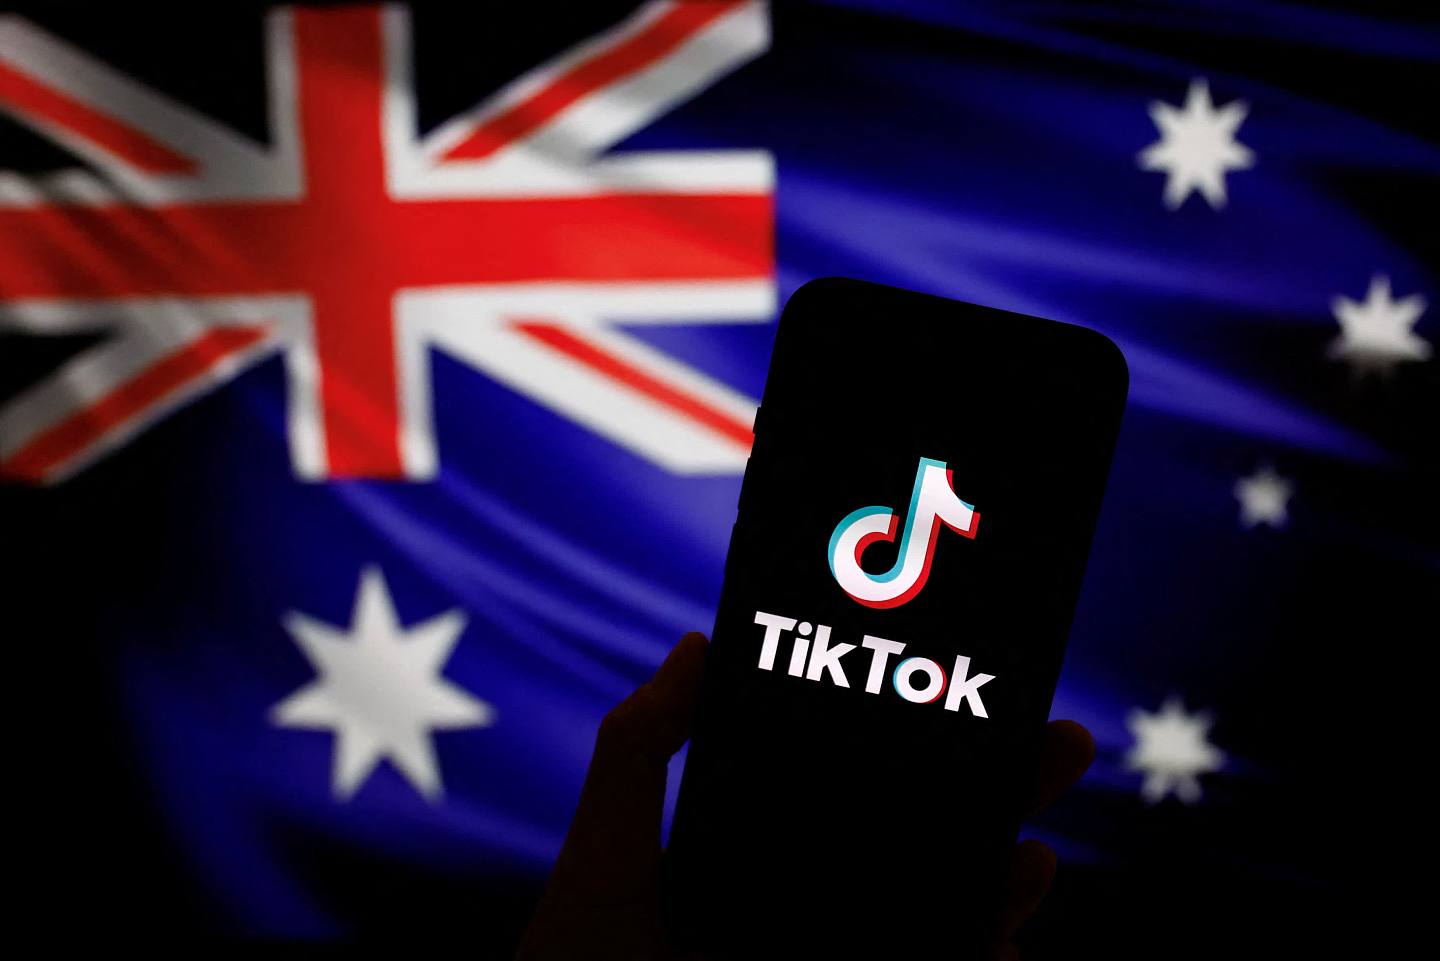 商務部回應澳禁止在聯邦公共部門設備使用TikTok - 國際- 香港文匯網